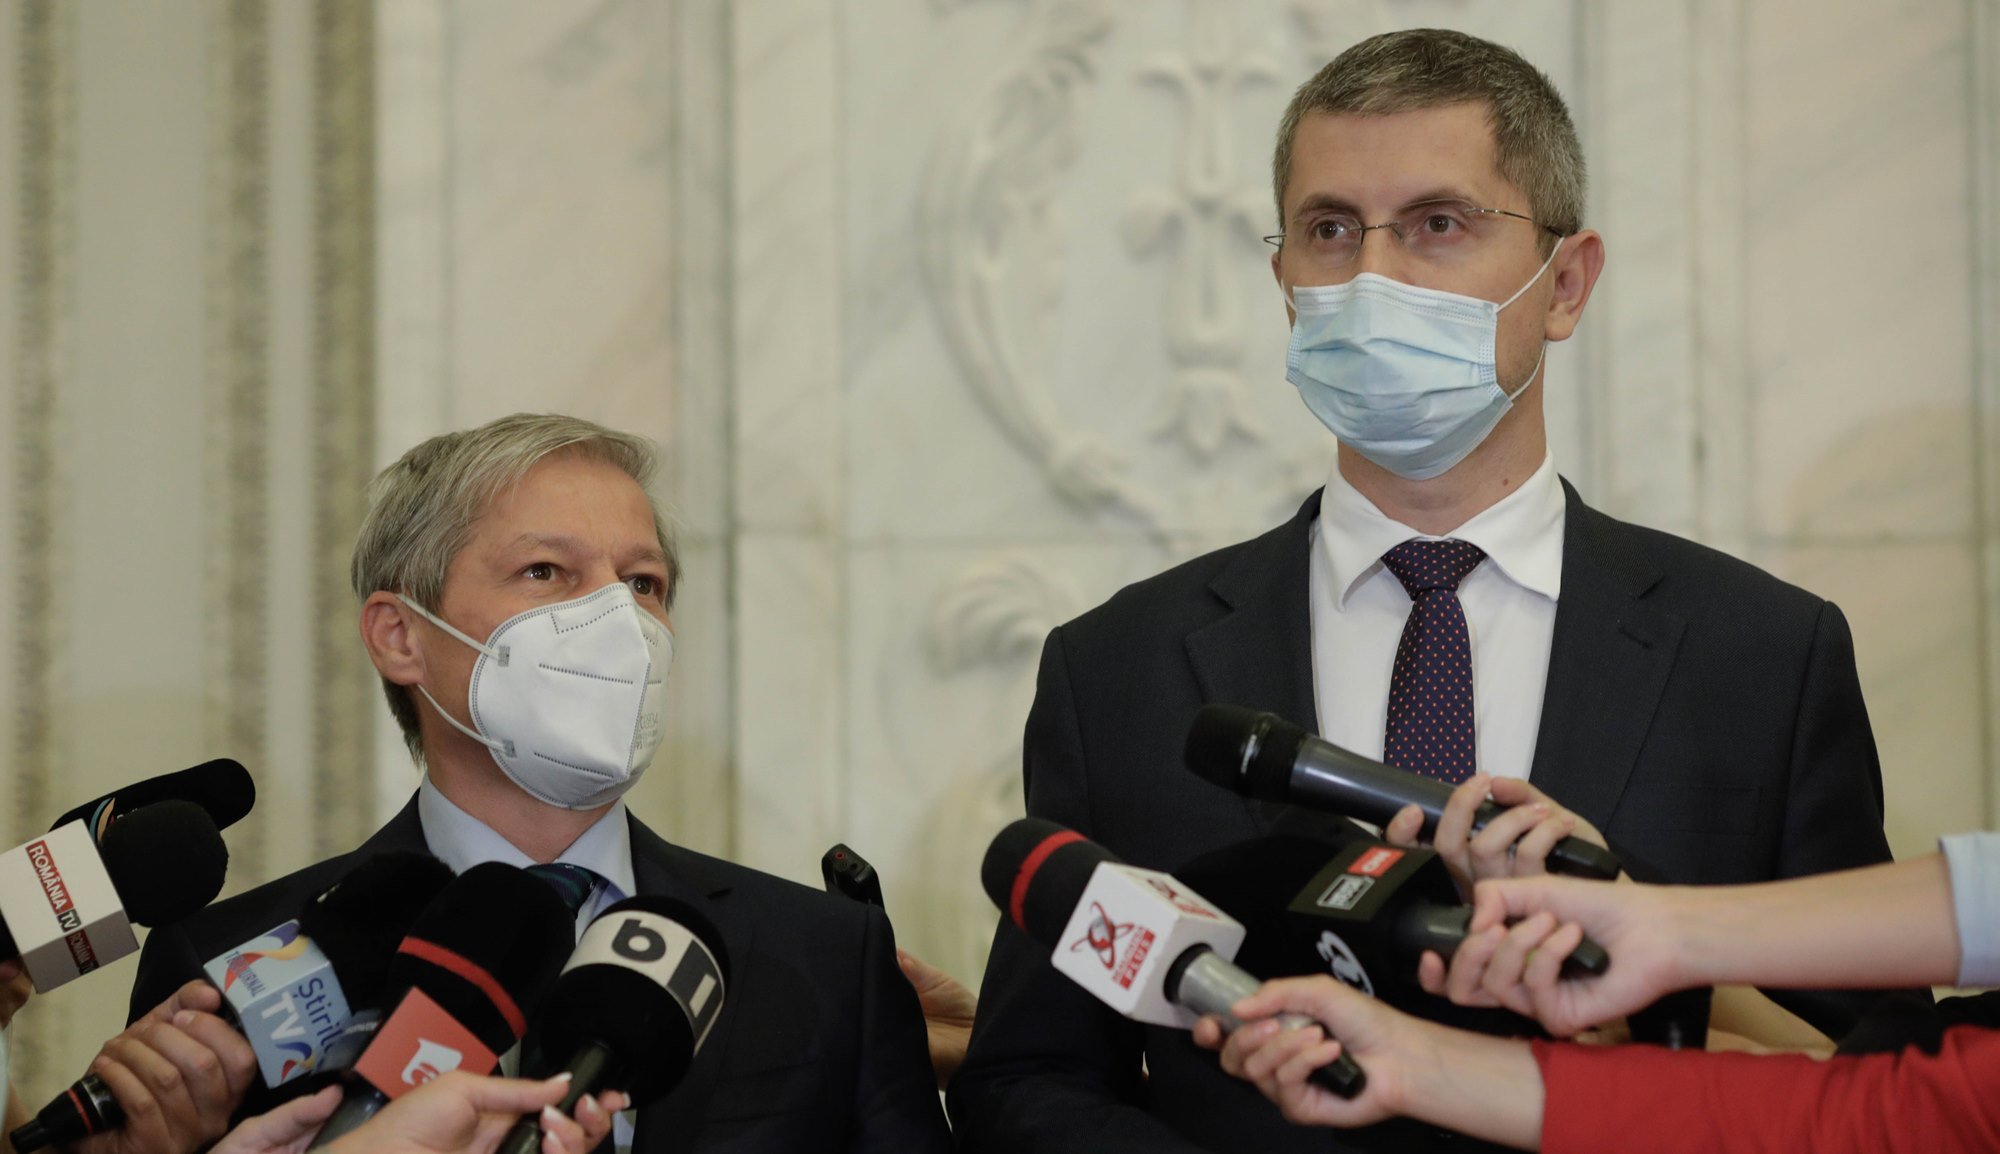 Cioloș: Avem mandat să solicităm în coaliție demisia premierului. Dacă nu, depunem moțiune